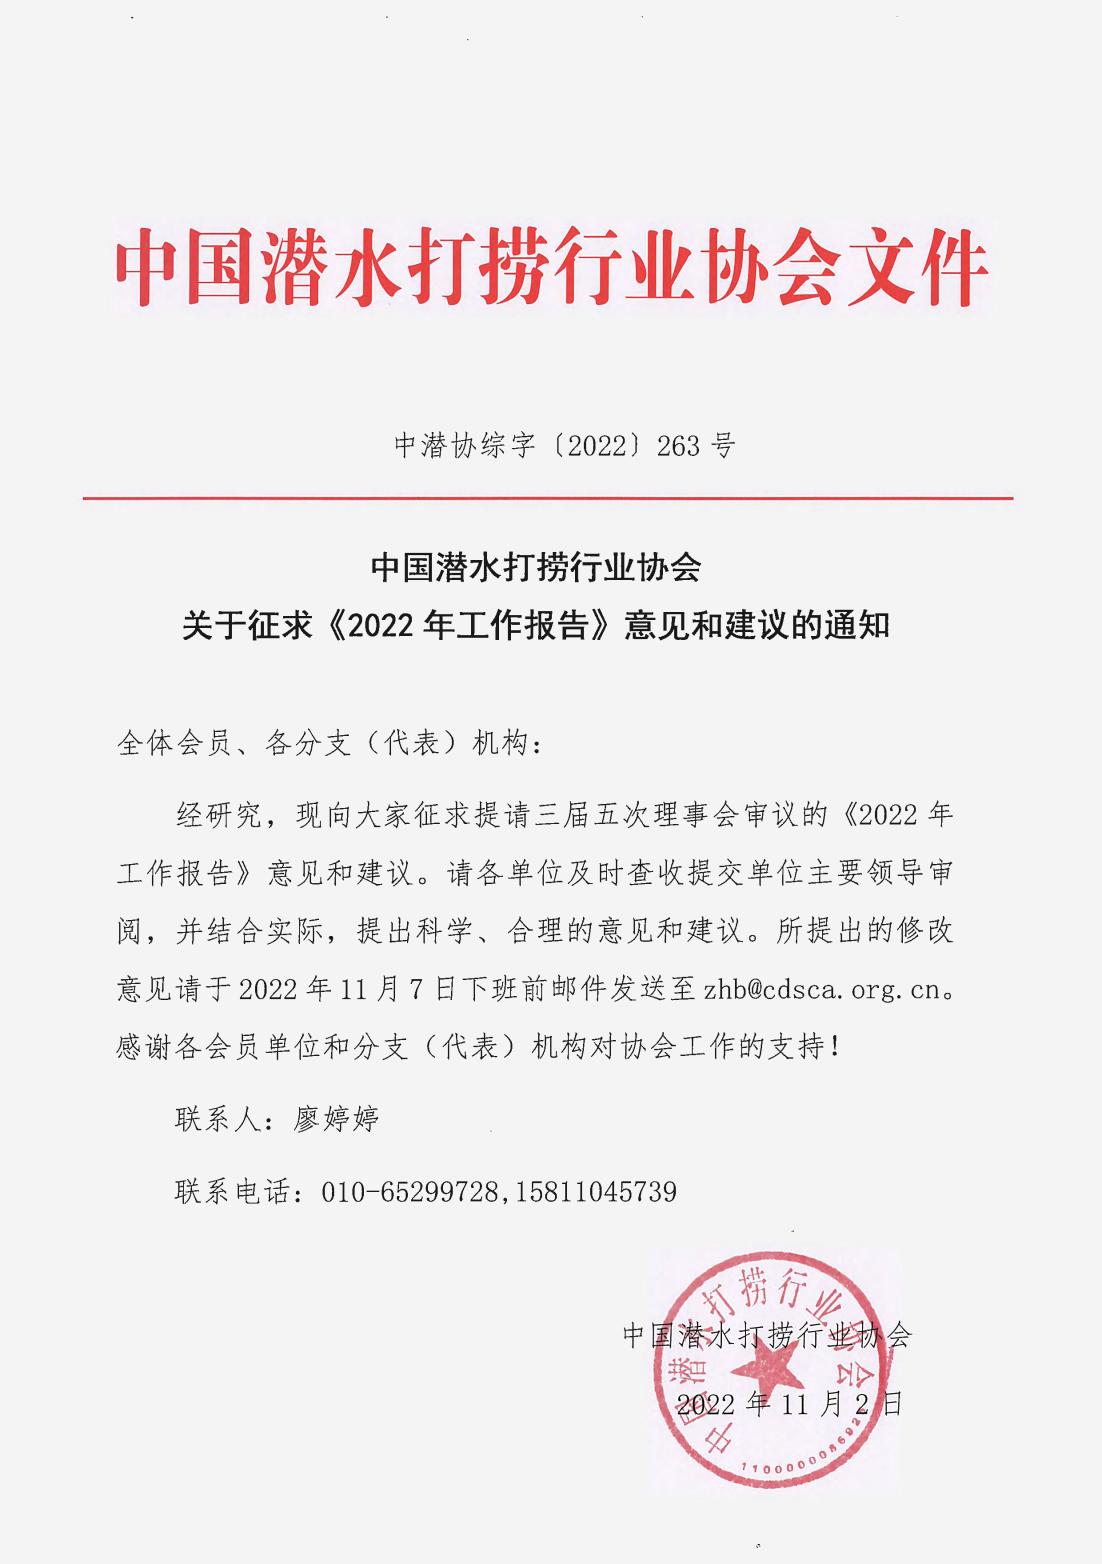 中国潜水打捞行业协会关于征求《2022年工作报告》意见和建议的通知_00.jpg